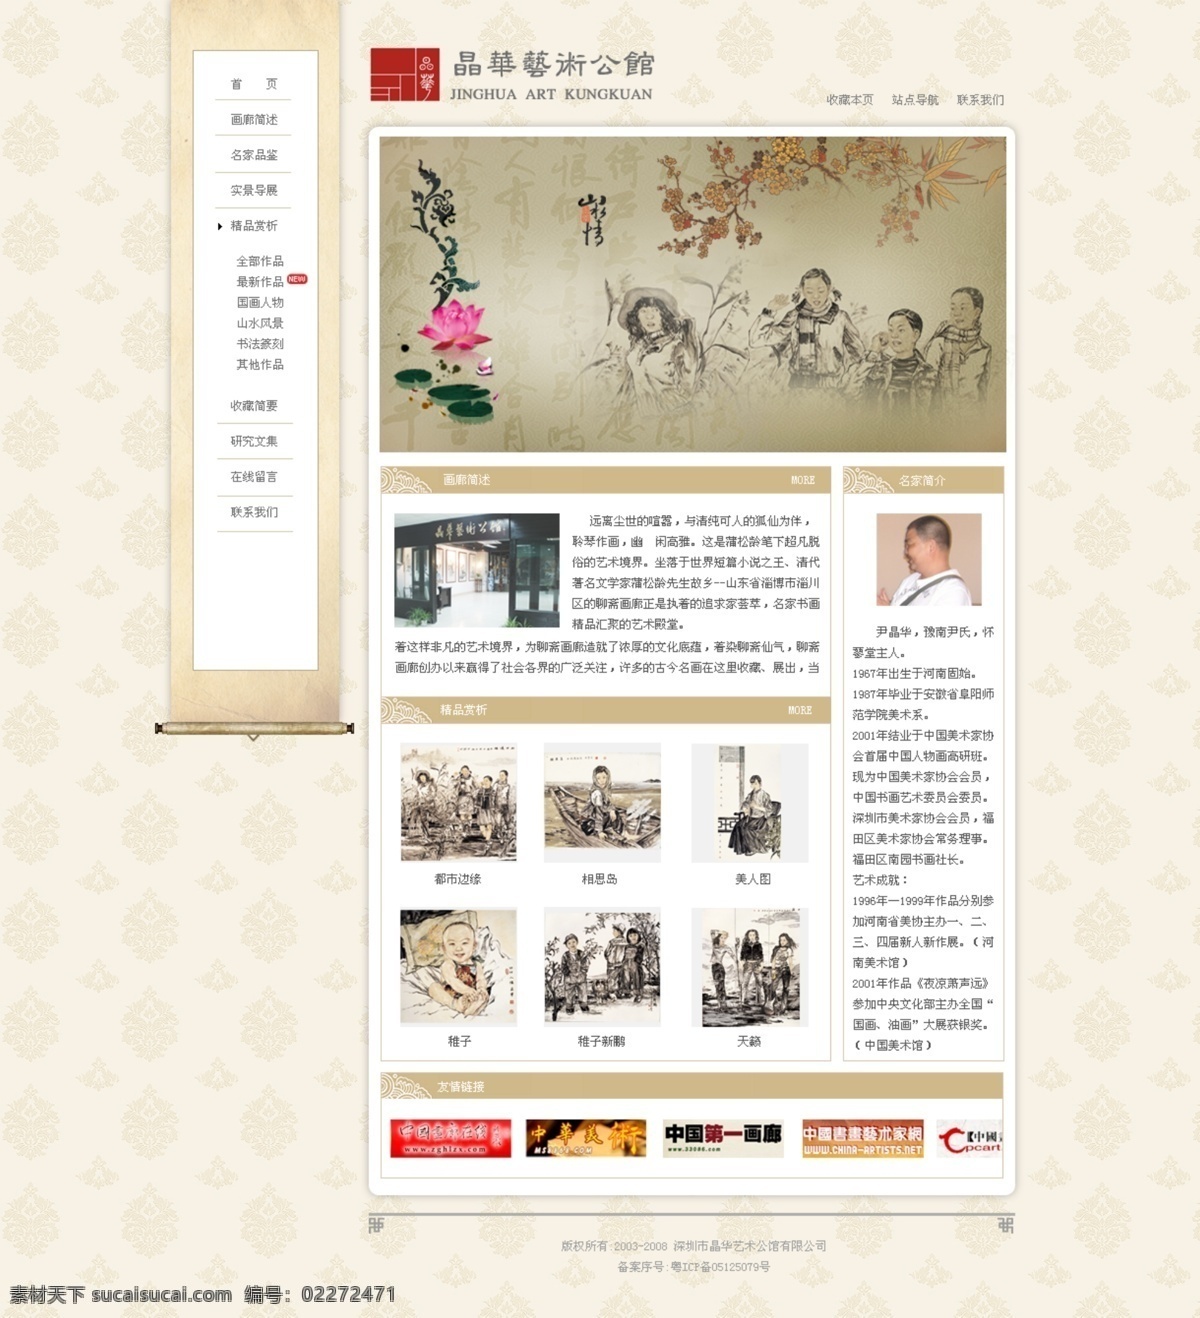 艺术 公馆 网页模板 荷花 卷轴 梅花 书法 源文件 中国风 中文模版 网页素材